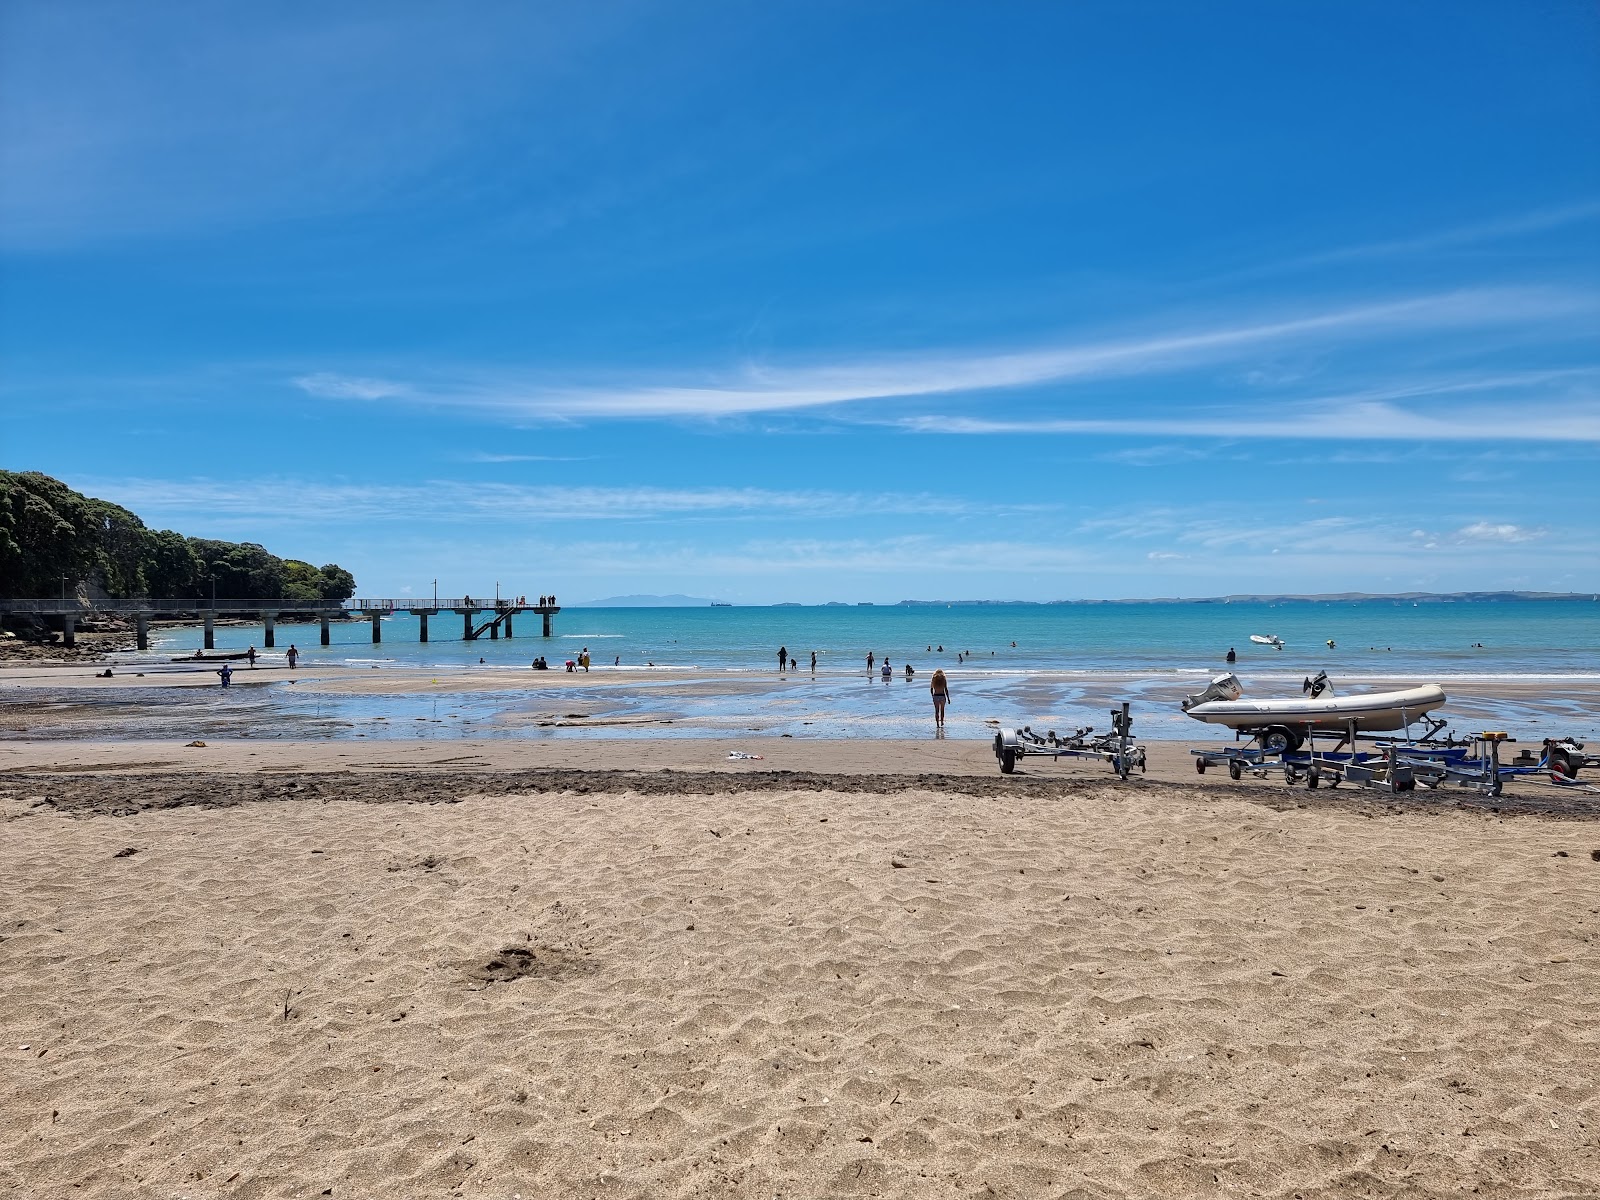 Murrays Bay Beach'in fotoğrafı geniş plaj ile birlikte